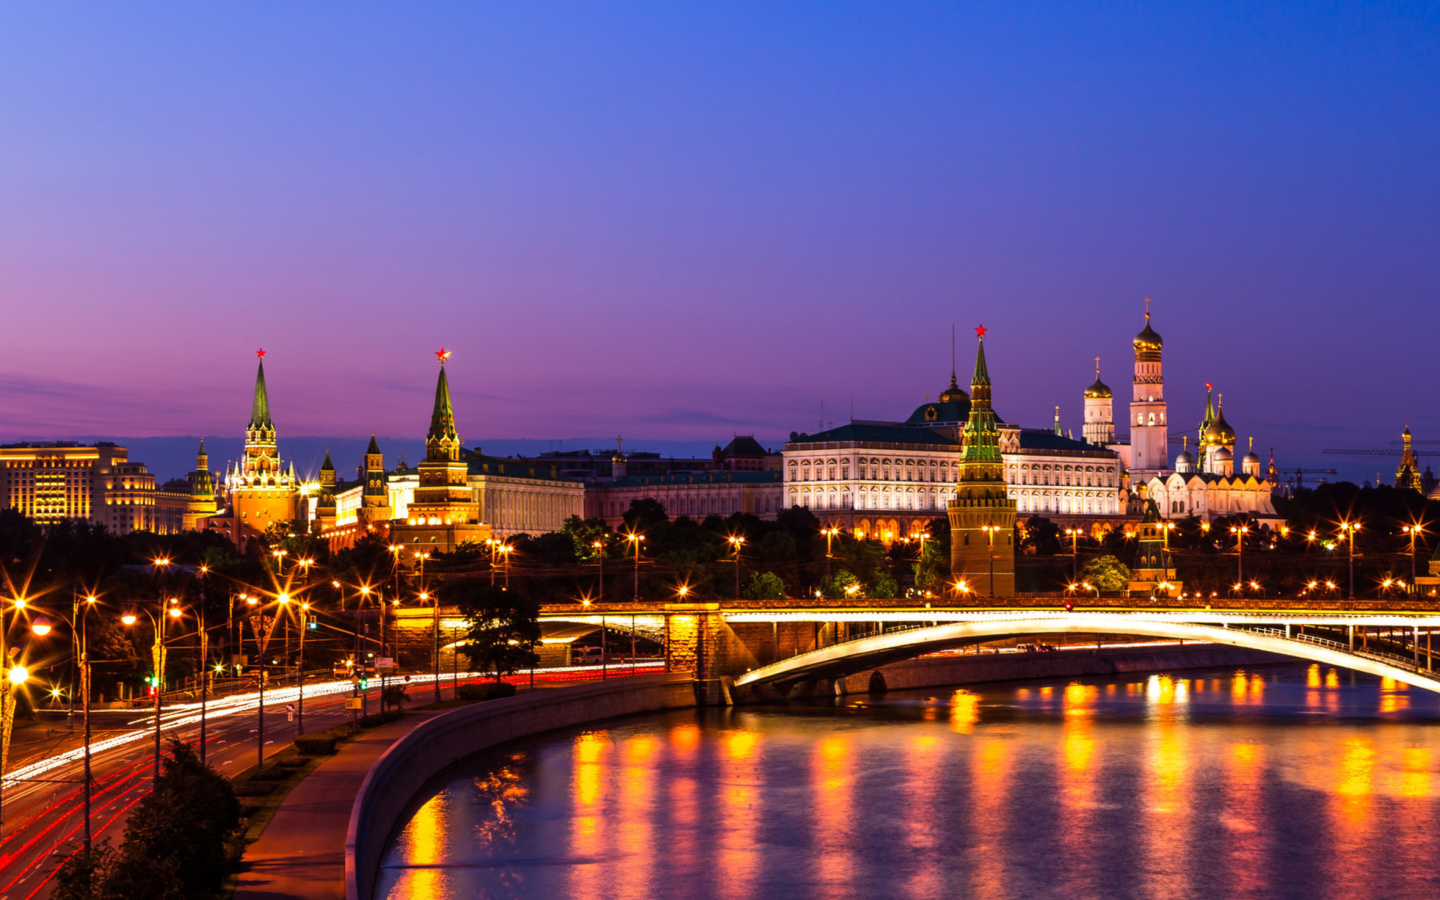 Обои Moscow Kremlin 1440x900